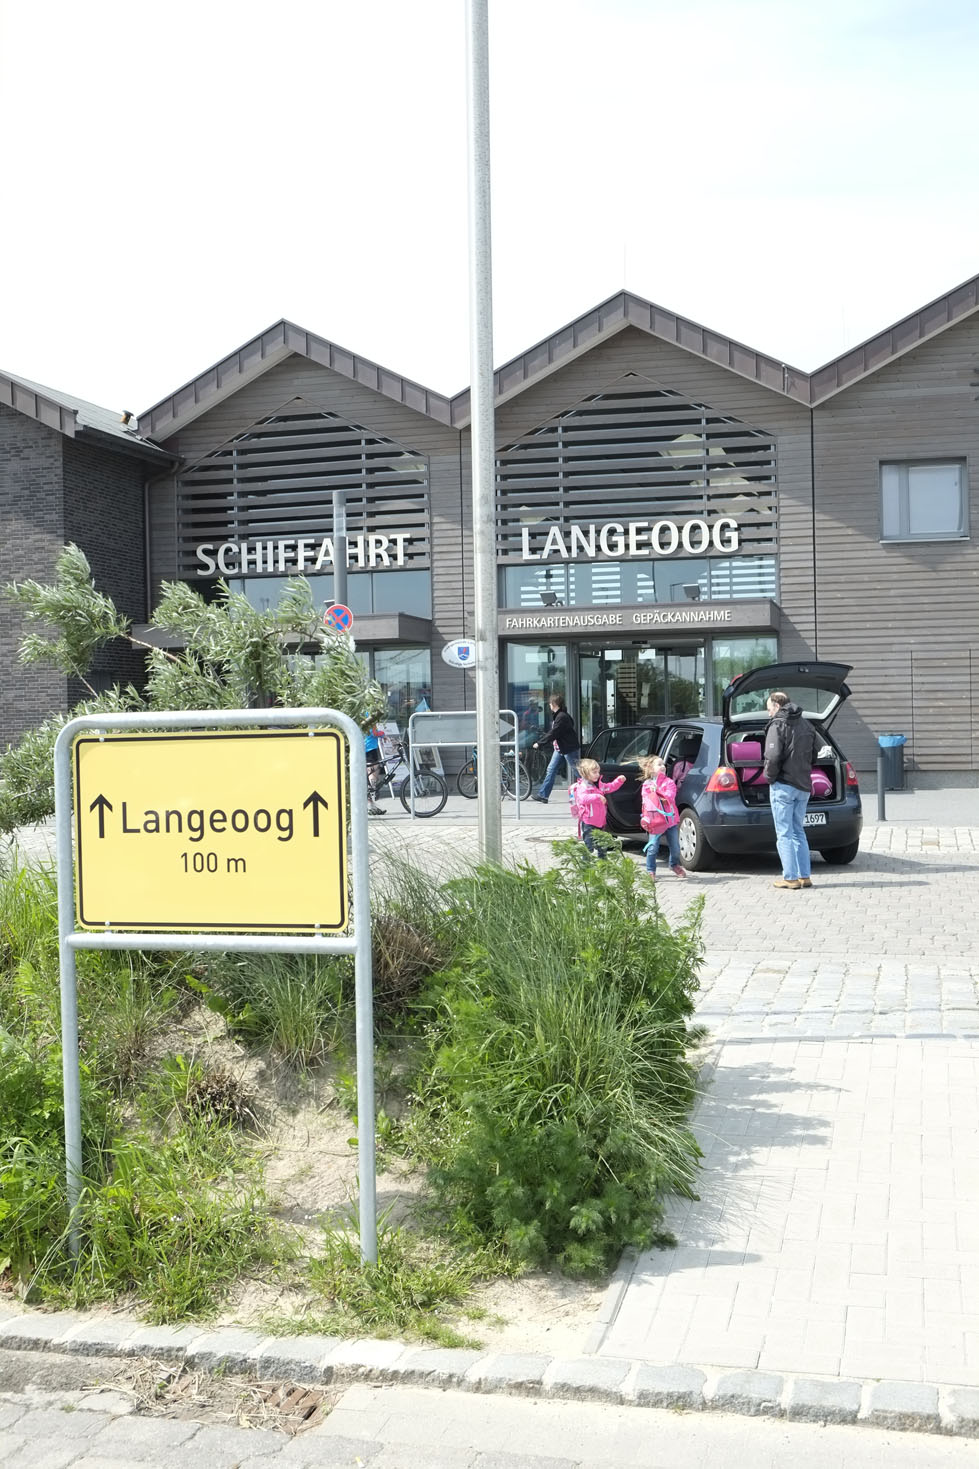 Das Gebäude der Schiffahrt Langeoog in der außenansicht. Vor dem Gebäude sind Menschen zu sehen, die Ihr Gepäck aus dem Kofferraum eines schwarzen Autos holen.